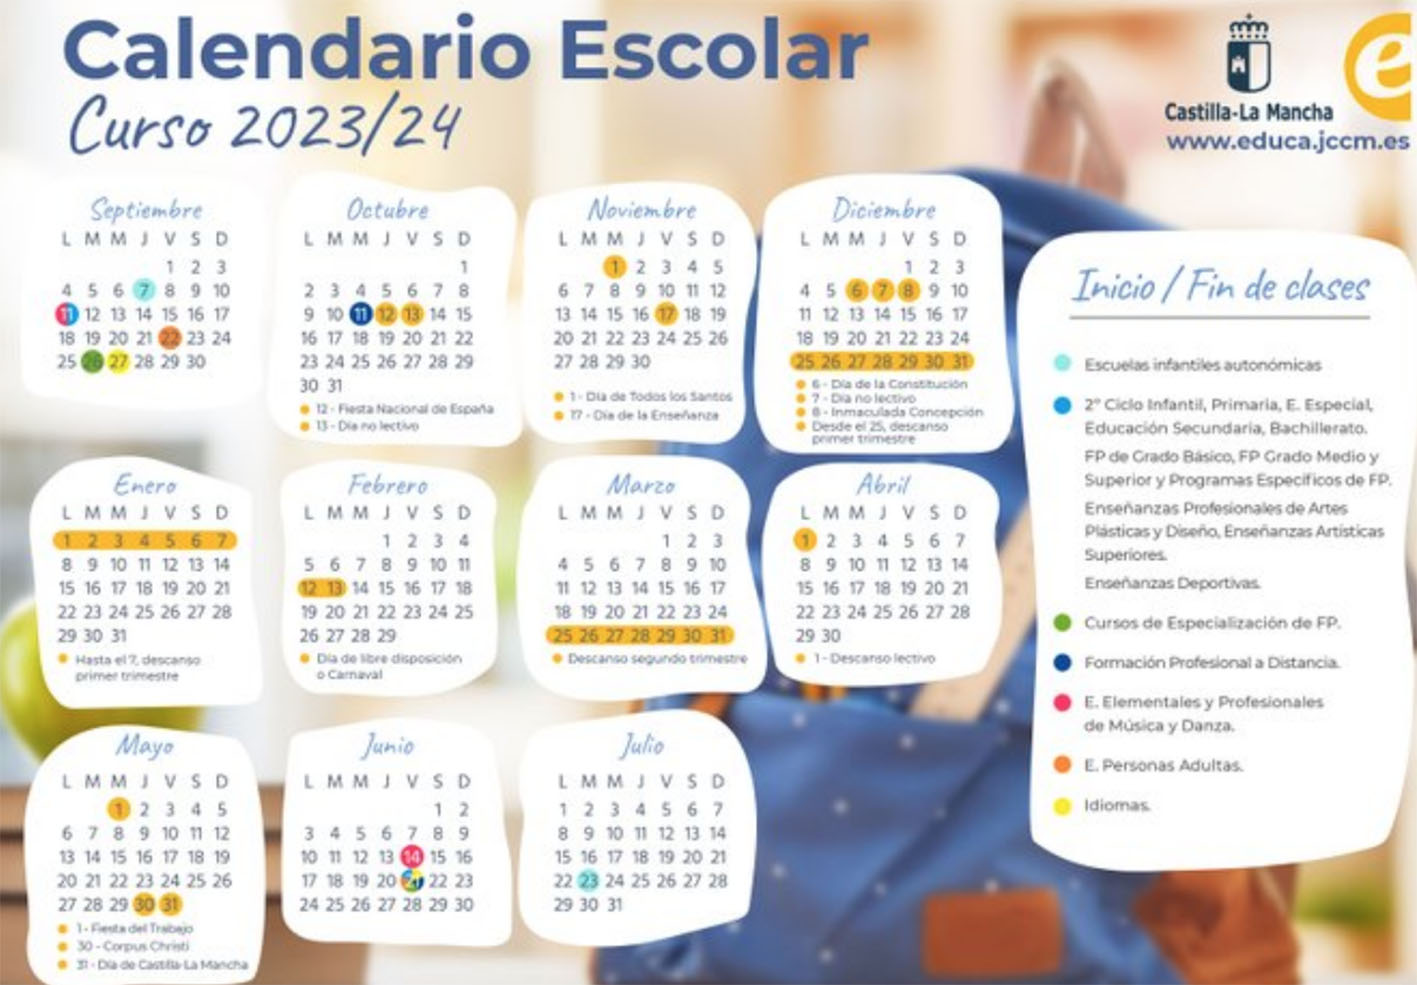 Calendario escolar completo de Castilla-La Mancha para el curso 2023/24.